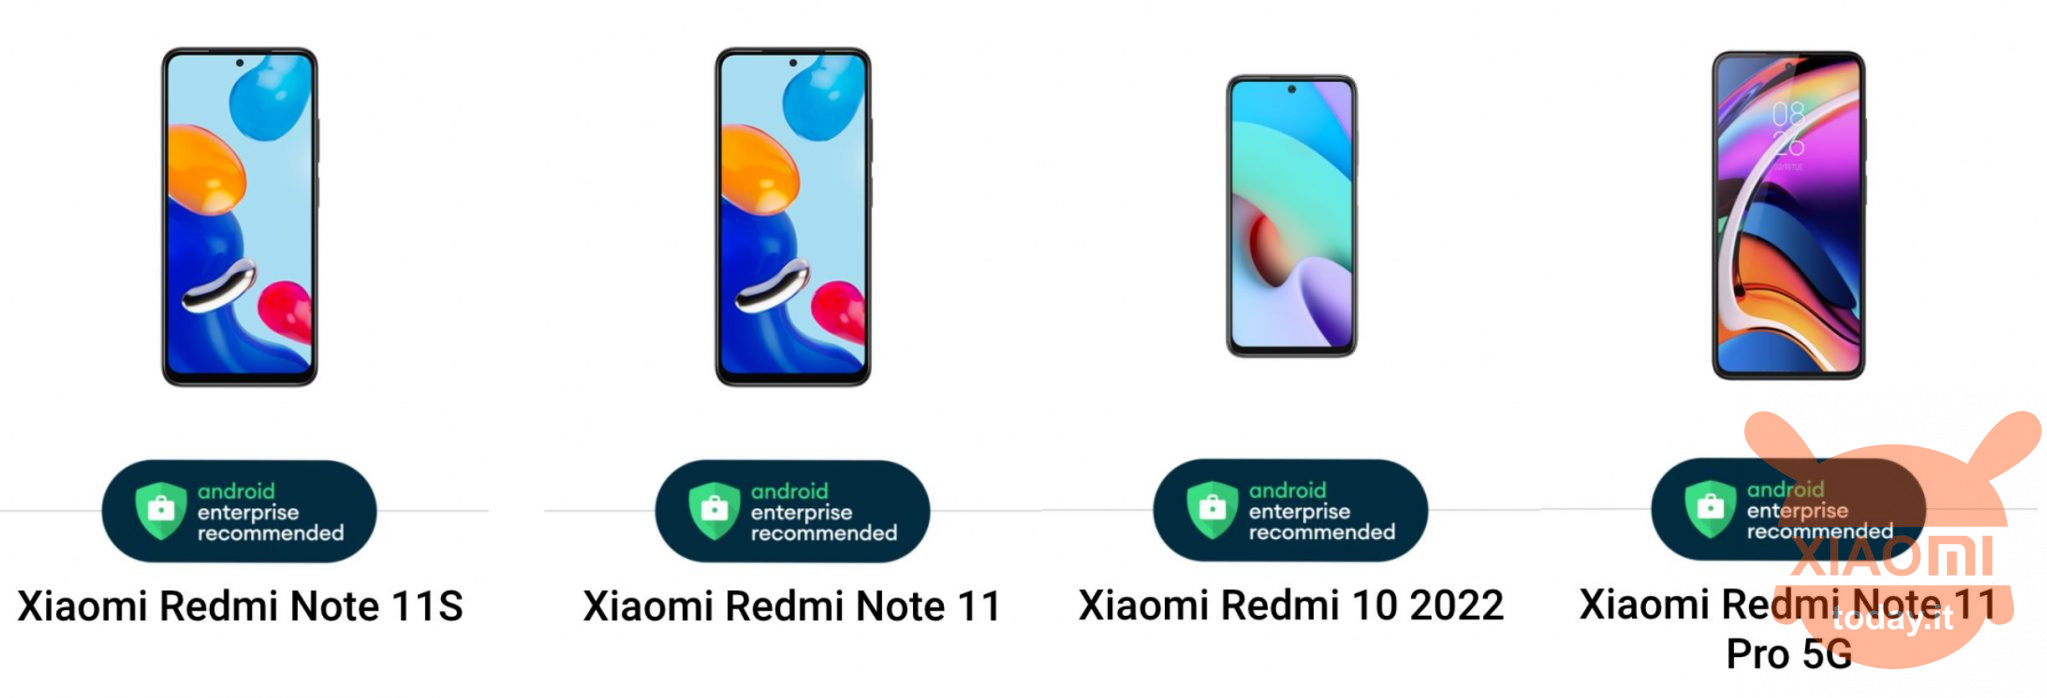 redmi 10, redmi note 11 serie certificati android enterprise